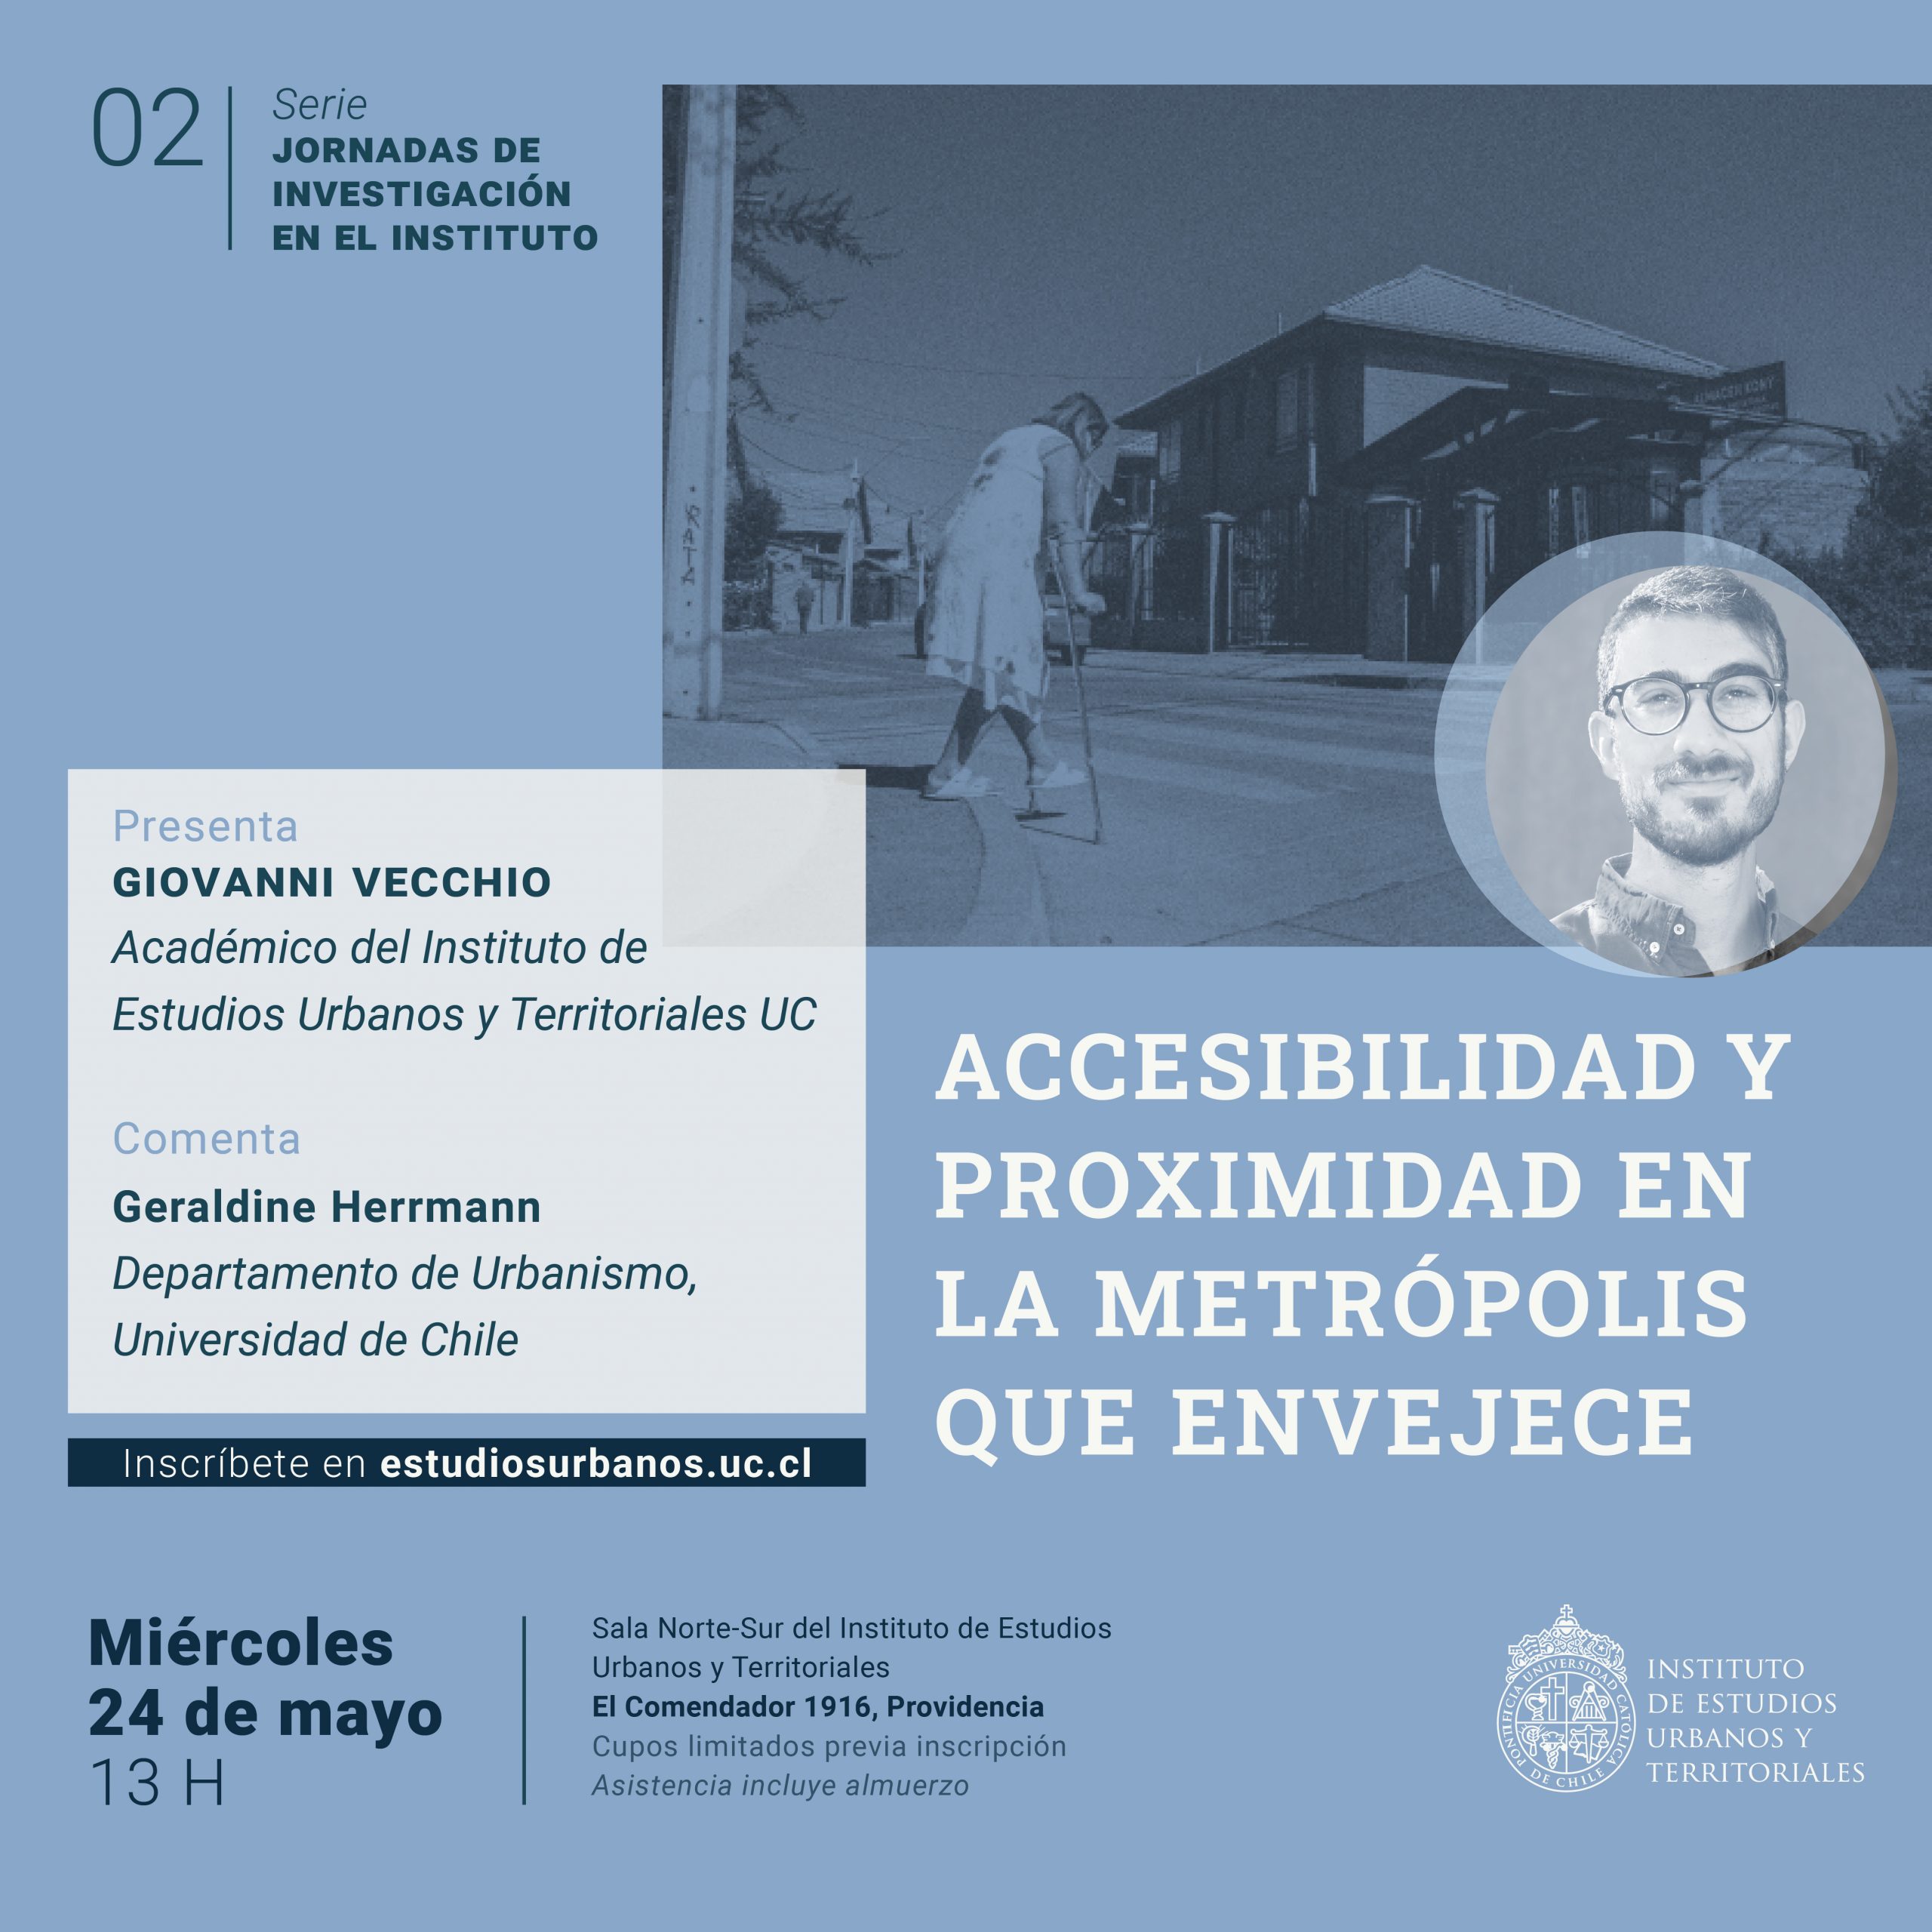 #2 Serie jornadas de investigación en el IEUT | “Accesibilidad y proximidad en la metrópolis que envejece”, expone Giovanni Vecchio